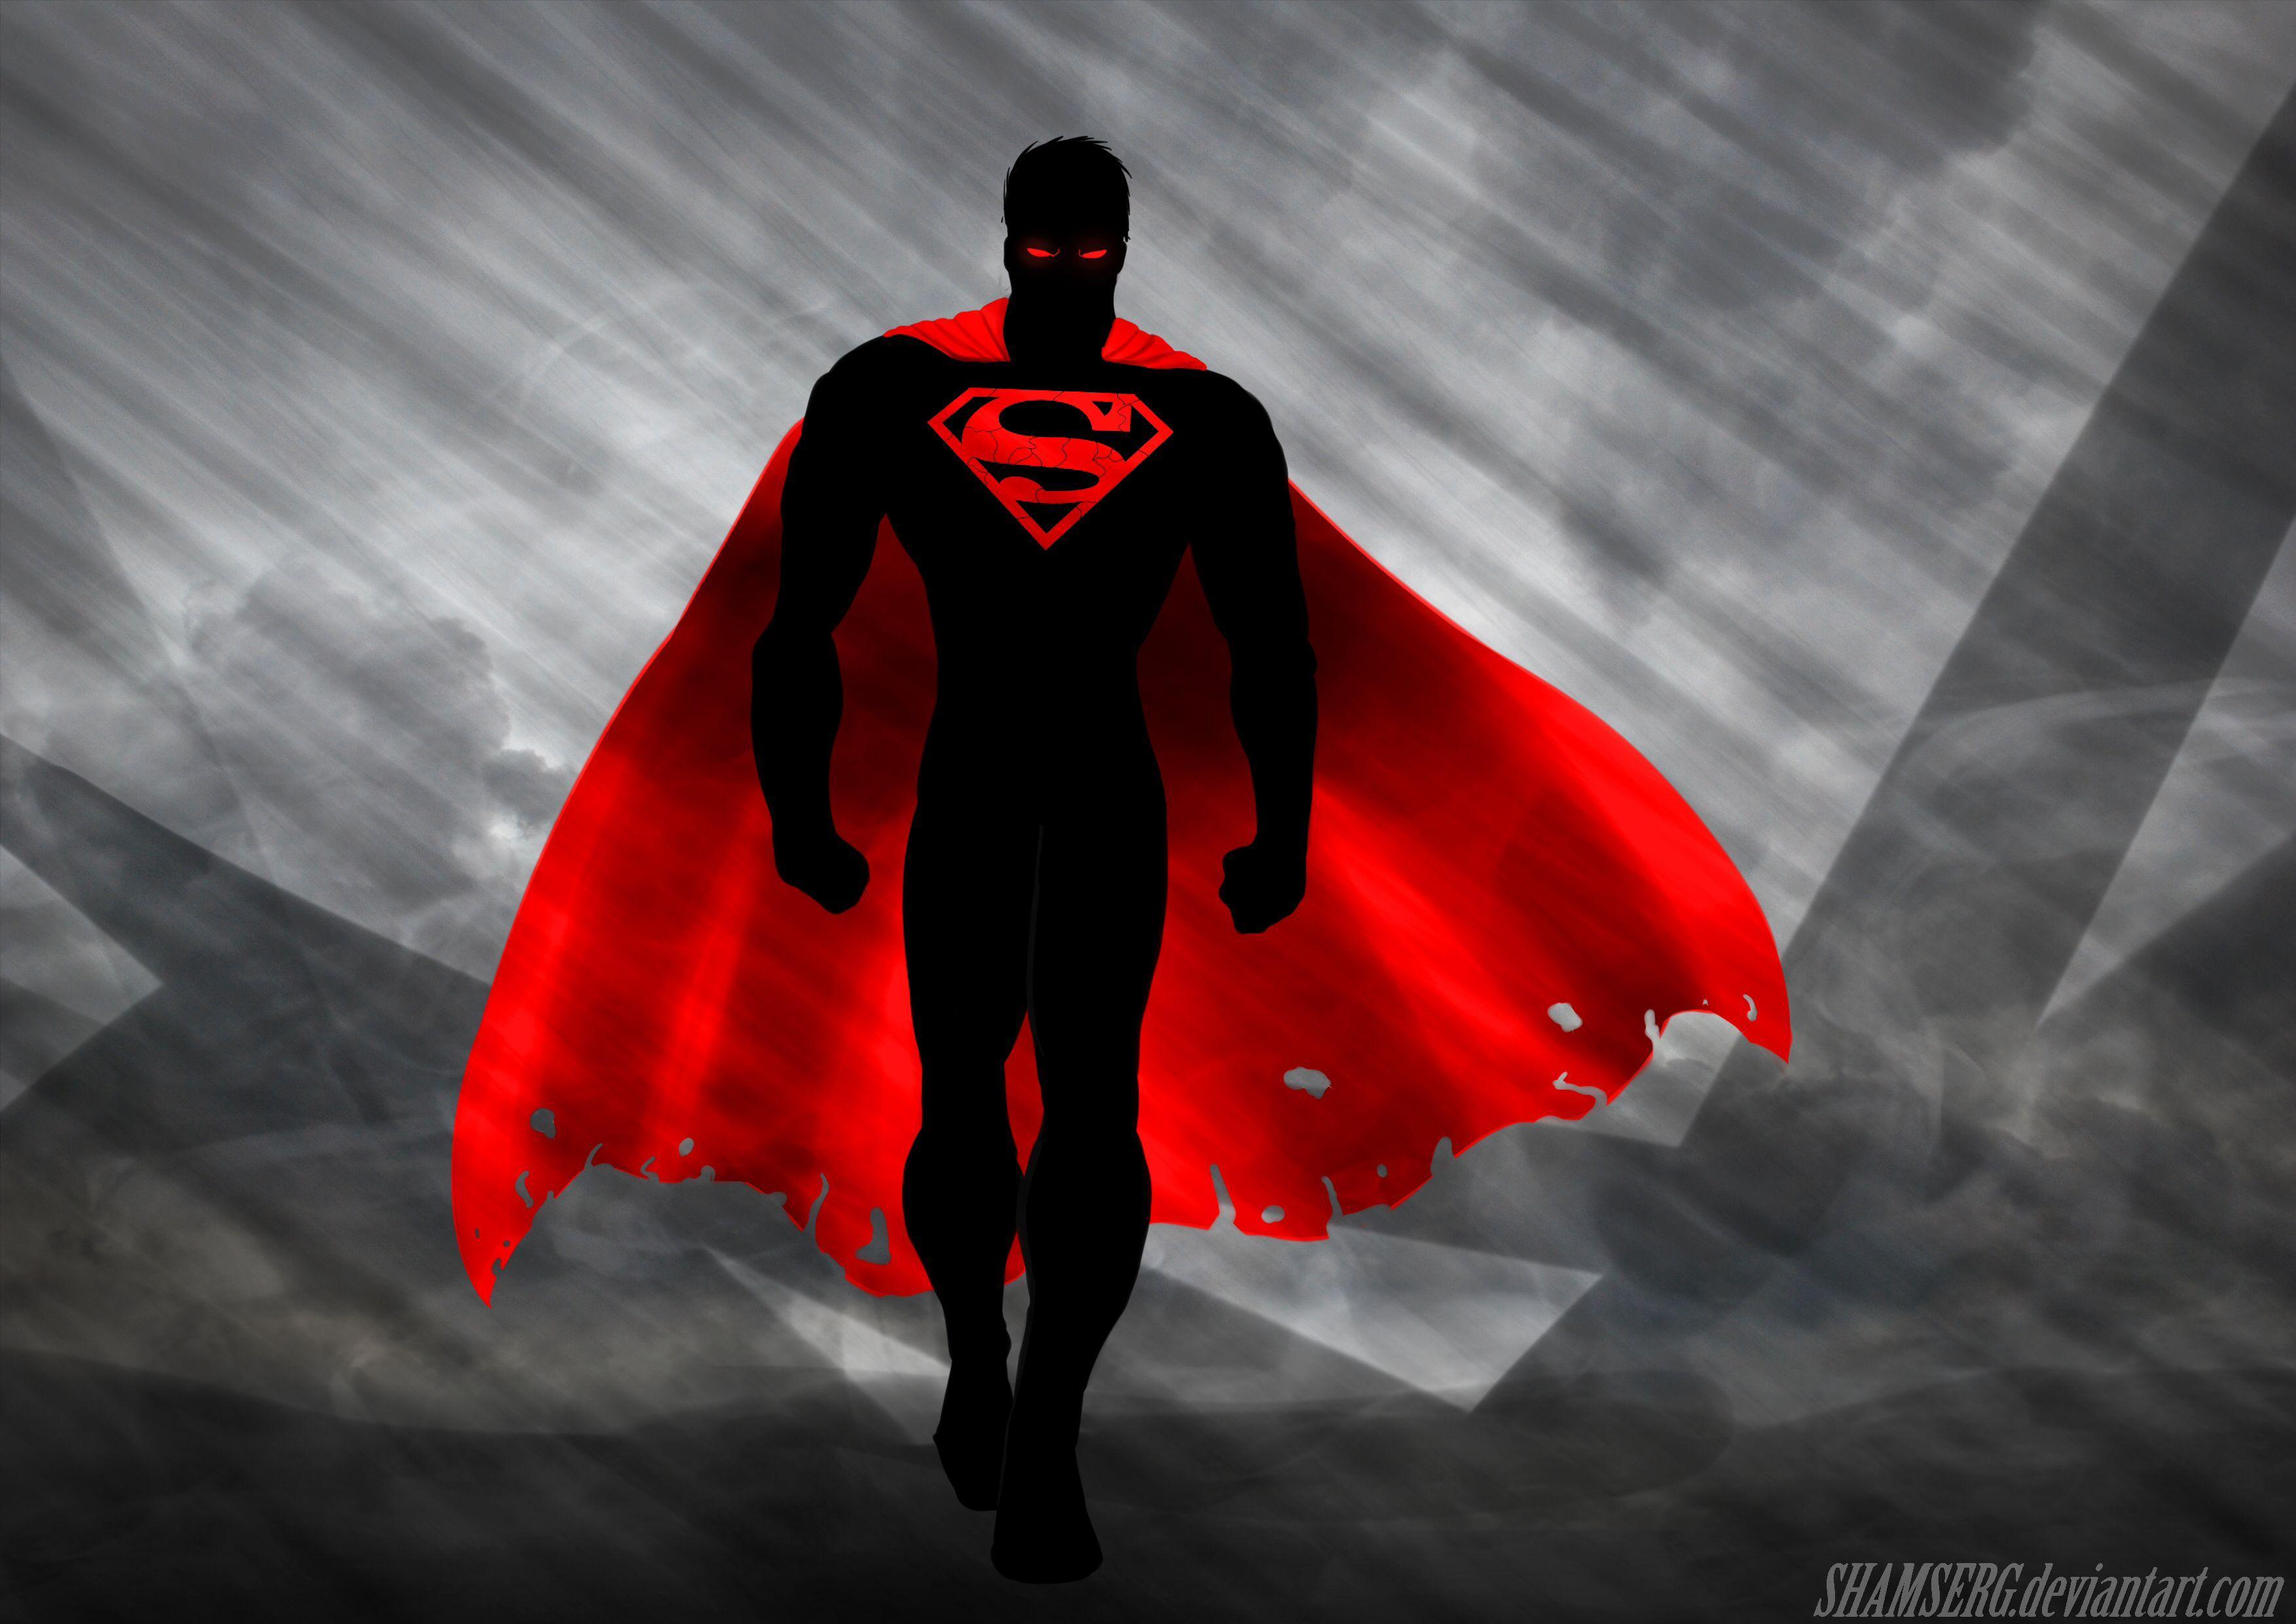 Is super heroes. Плащ героя. Супергерой в Красном плаще. Красный плащ Супермена.